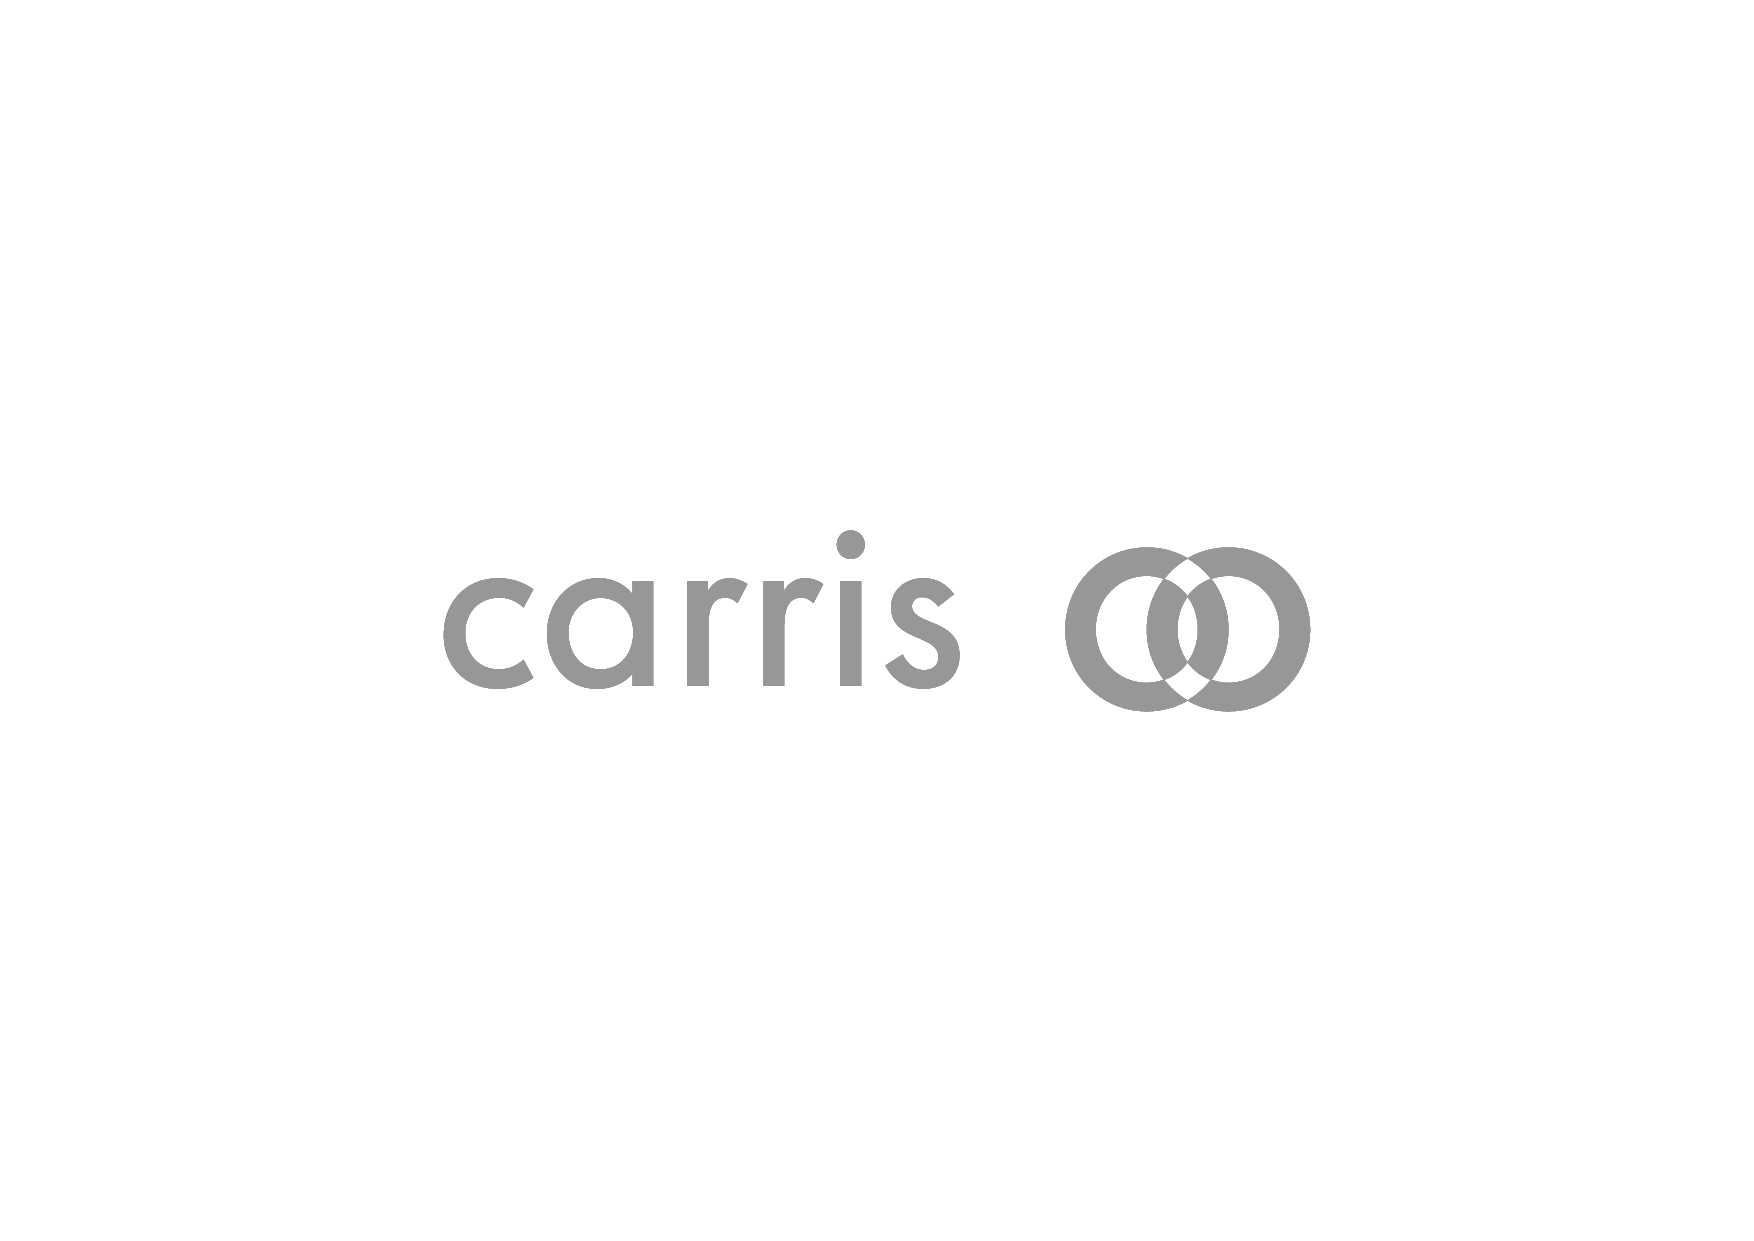 Logos CARRIS-02.png